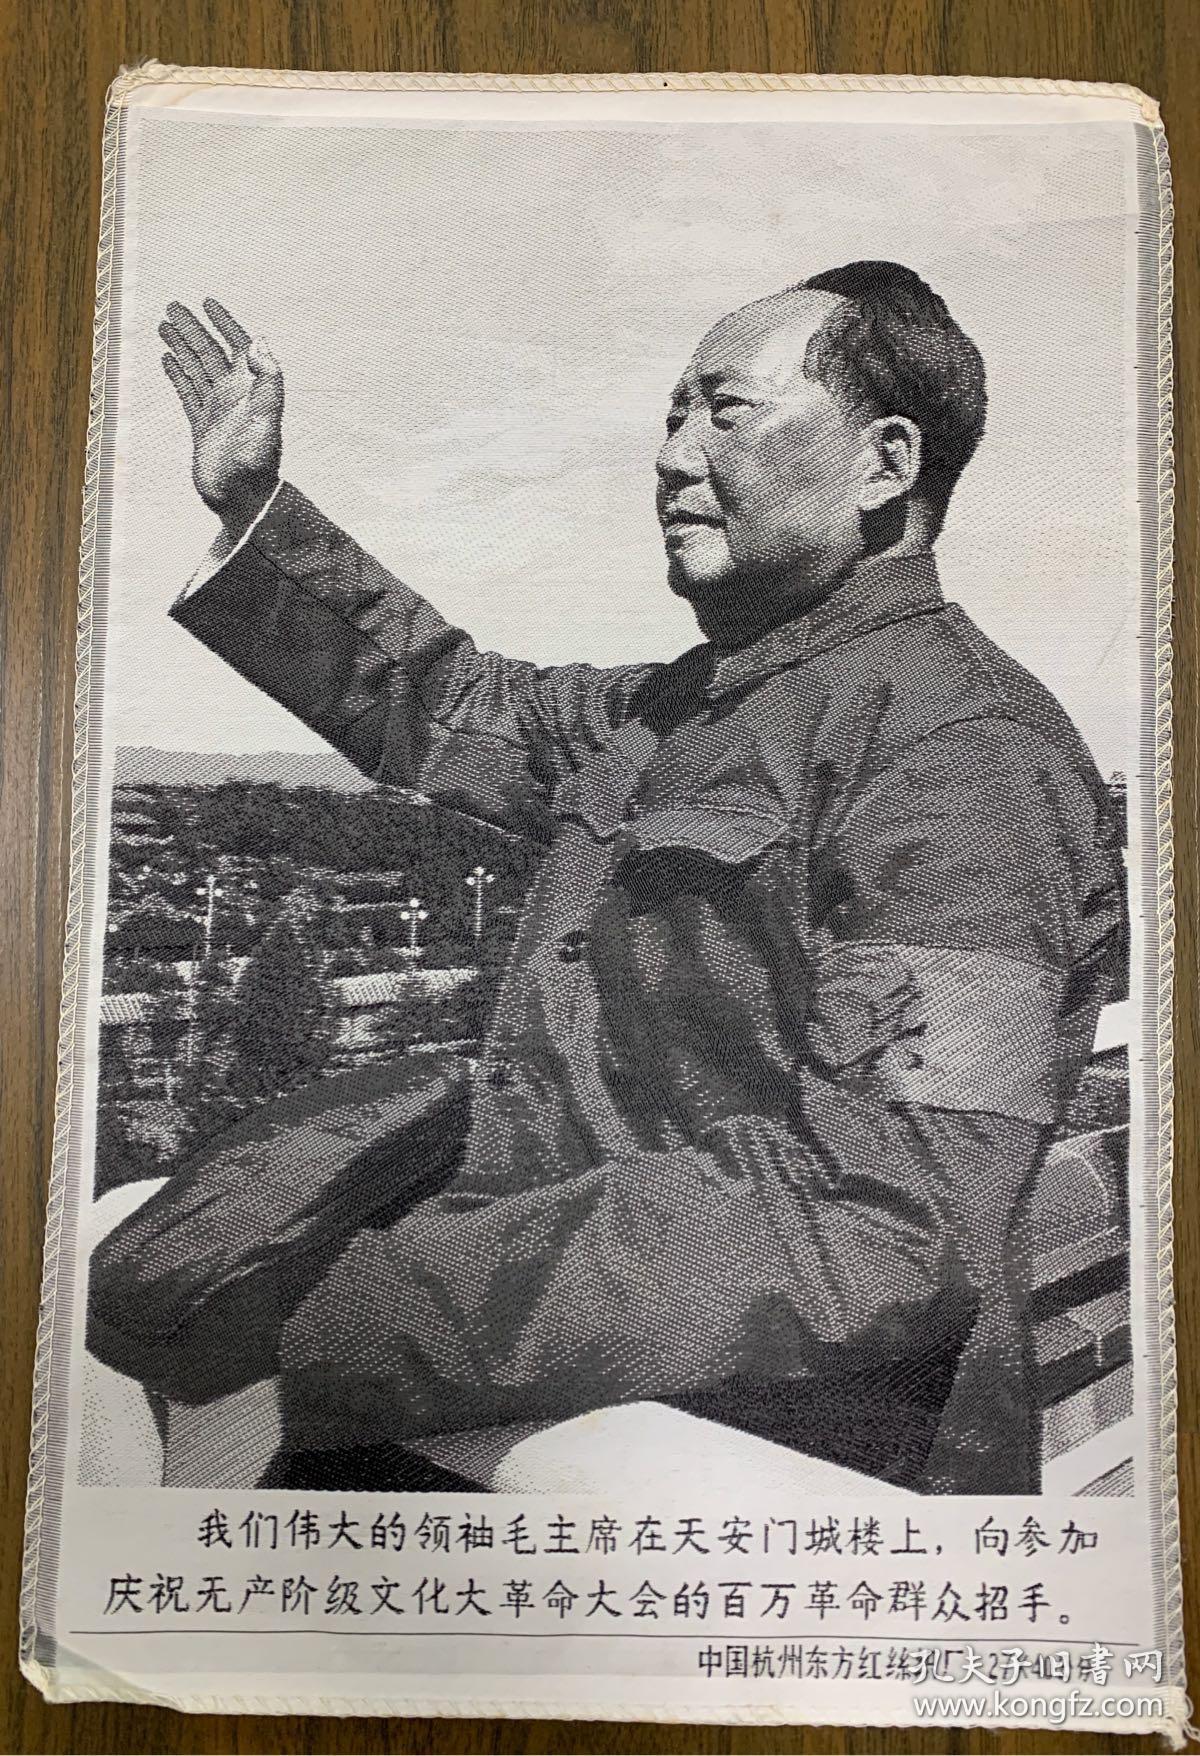 丝织品 毛主席在天安门城楼向百万革命群众招手42/28cm